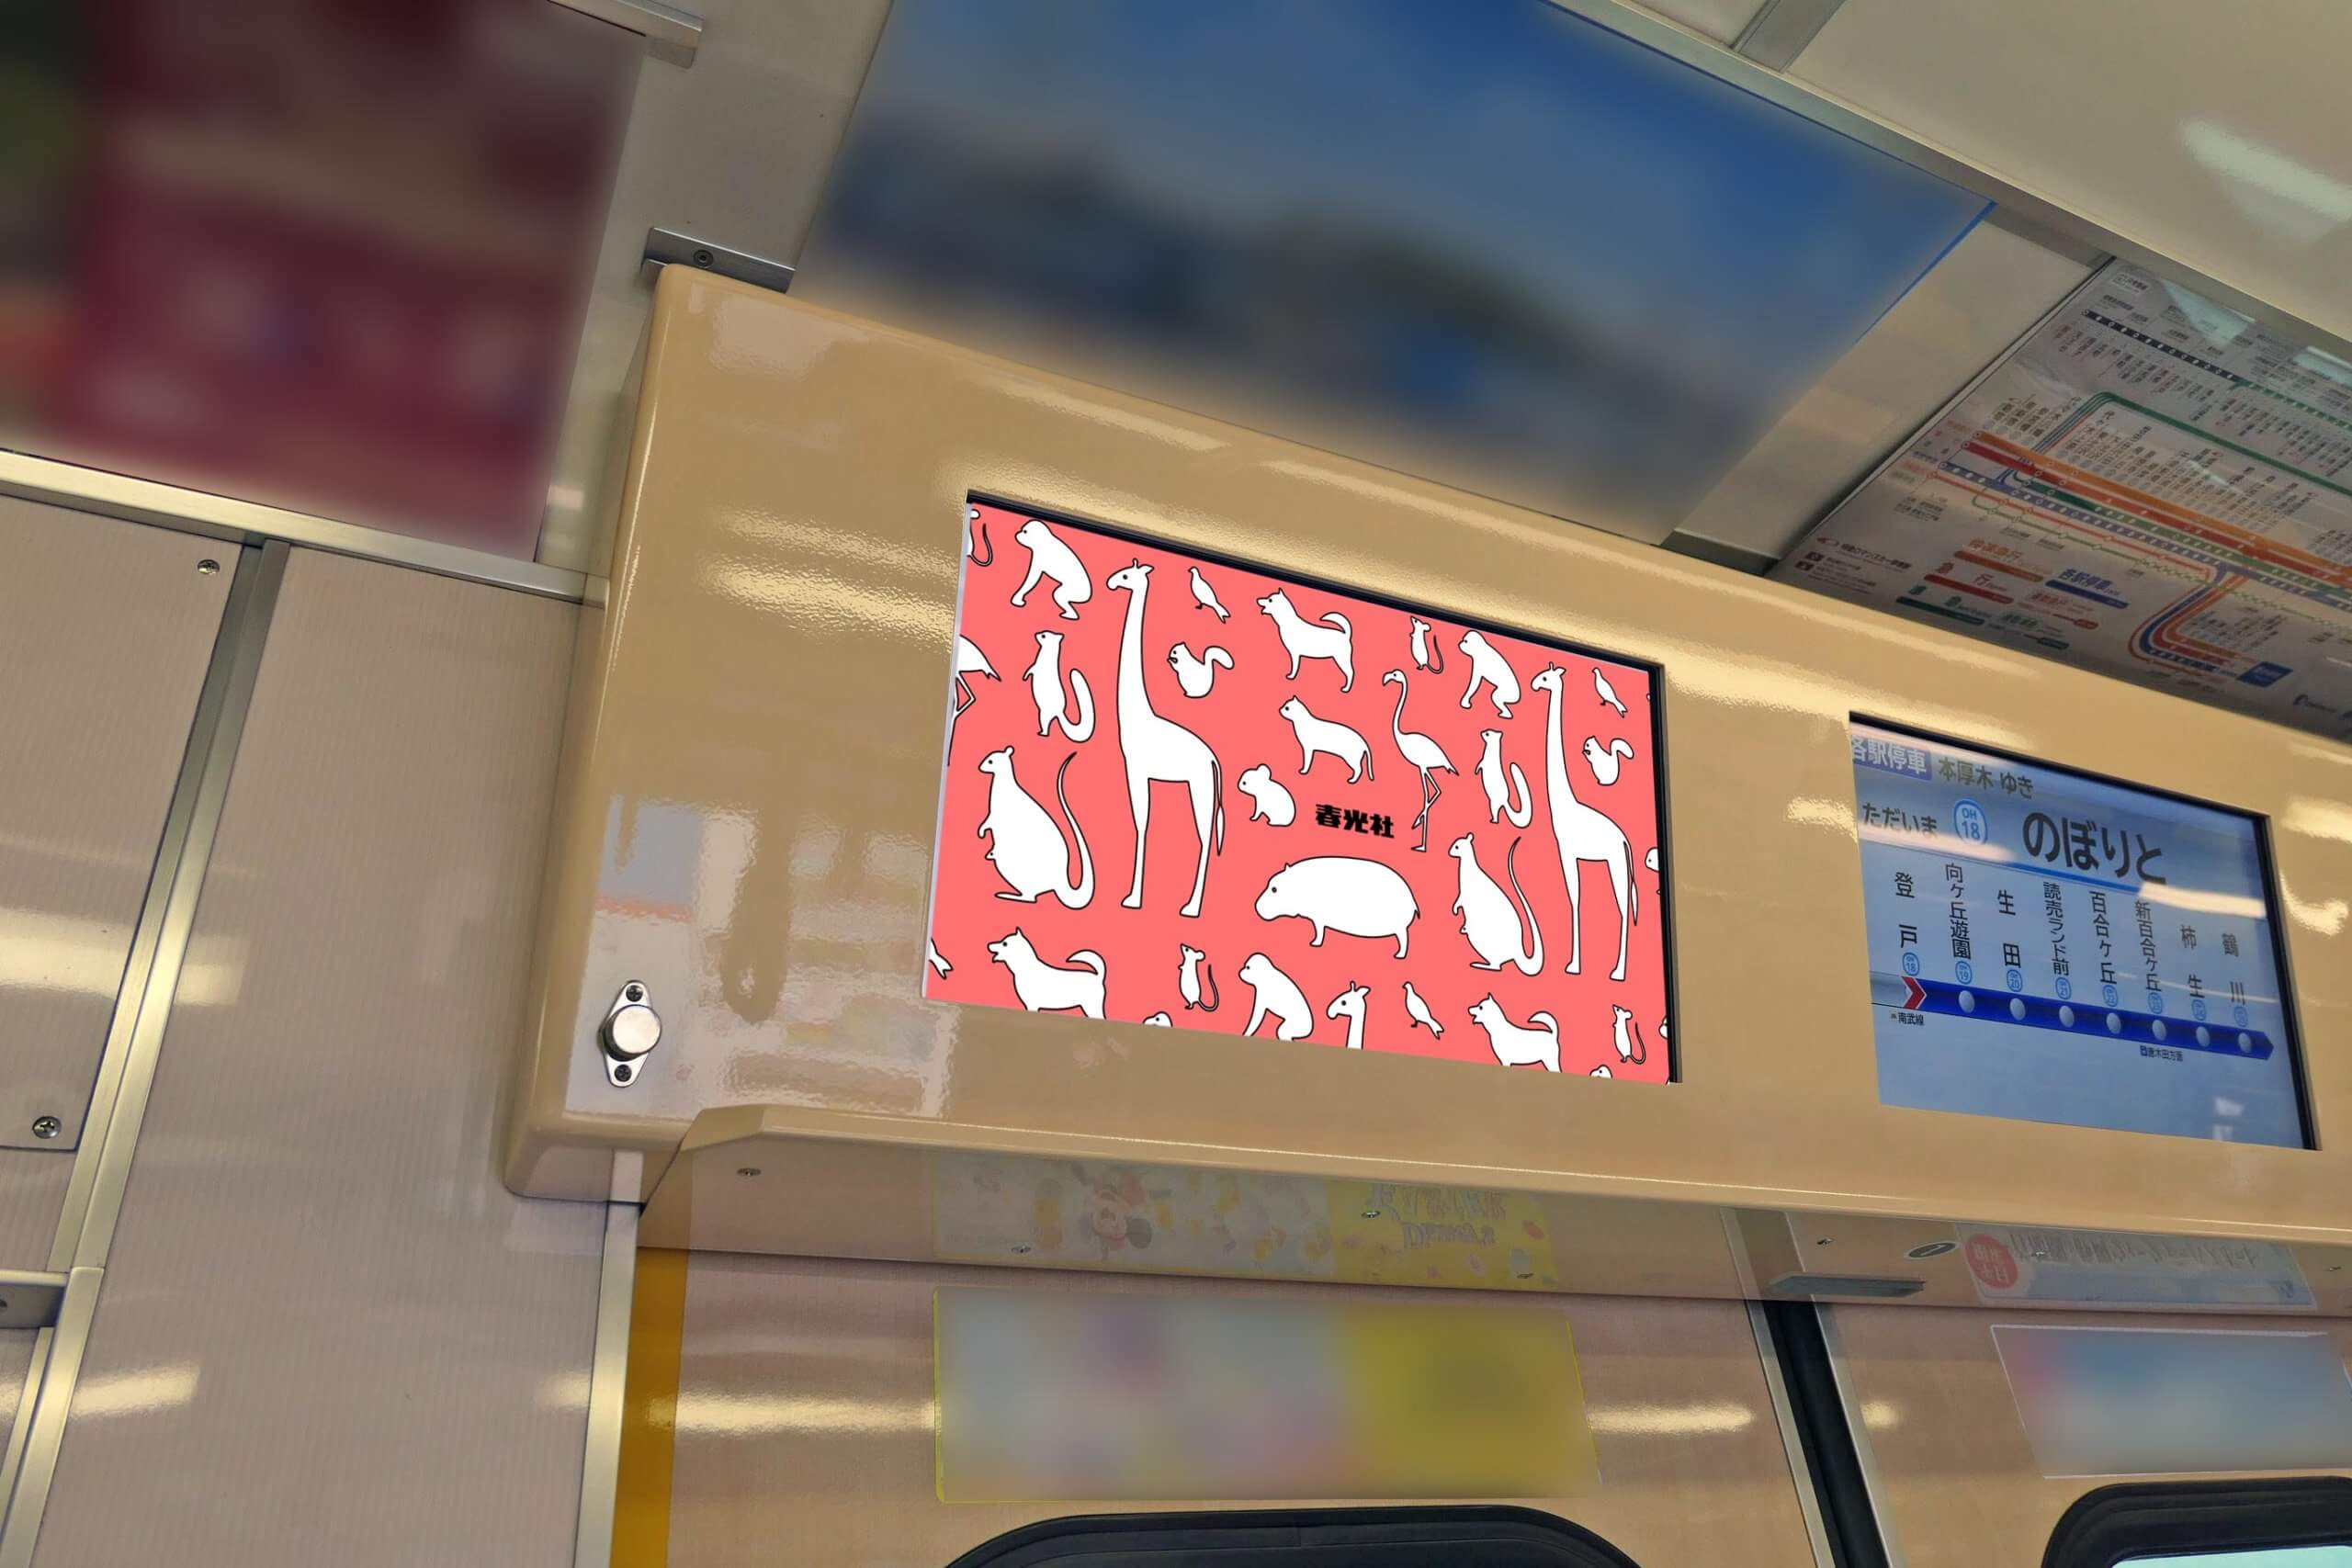 小田急電鉄の各車両ドア上部に運行情報用のディスプレイと並列で設置されている、視認性の高いヨコ型のデジタルサイネージ